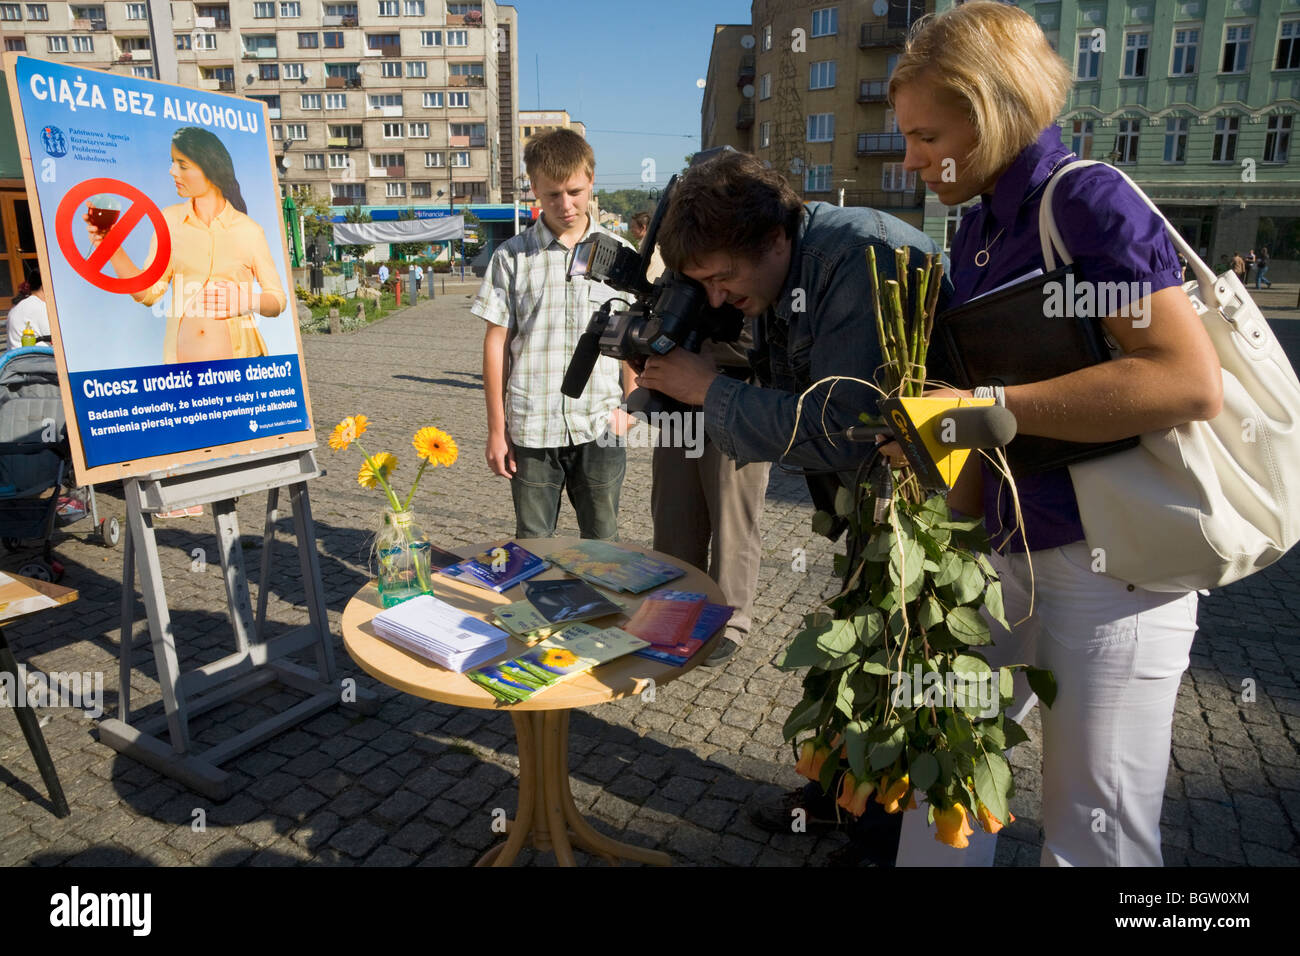 TV polacco equipaggio riprese presso un pubblico informazioni / consulenza sanitaria roadshow per tagliare il consumo di alcool da parte di donne in stato di gravidanza. La Polonia. Foto Stock